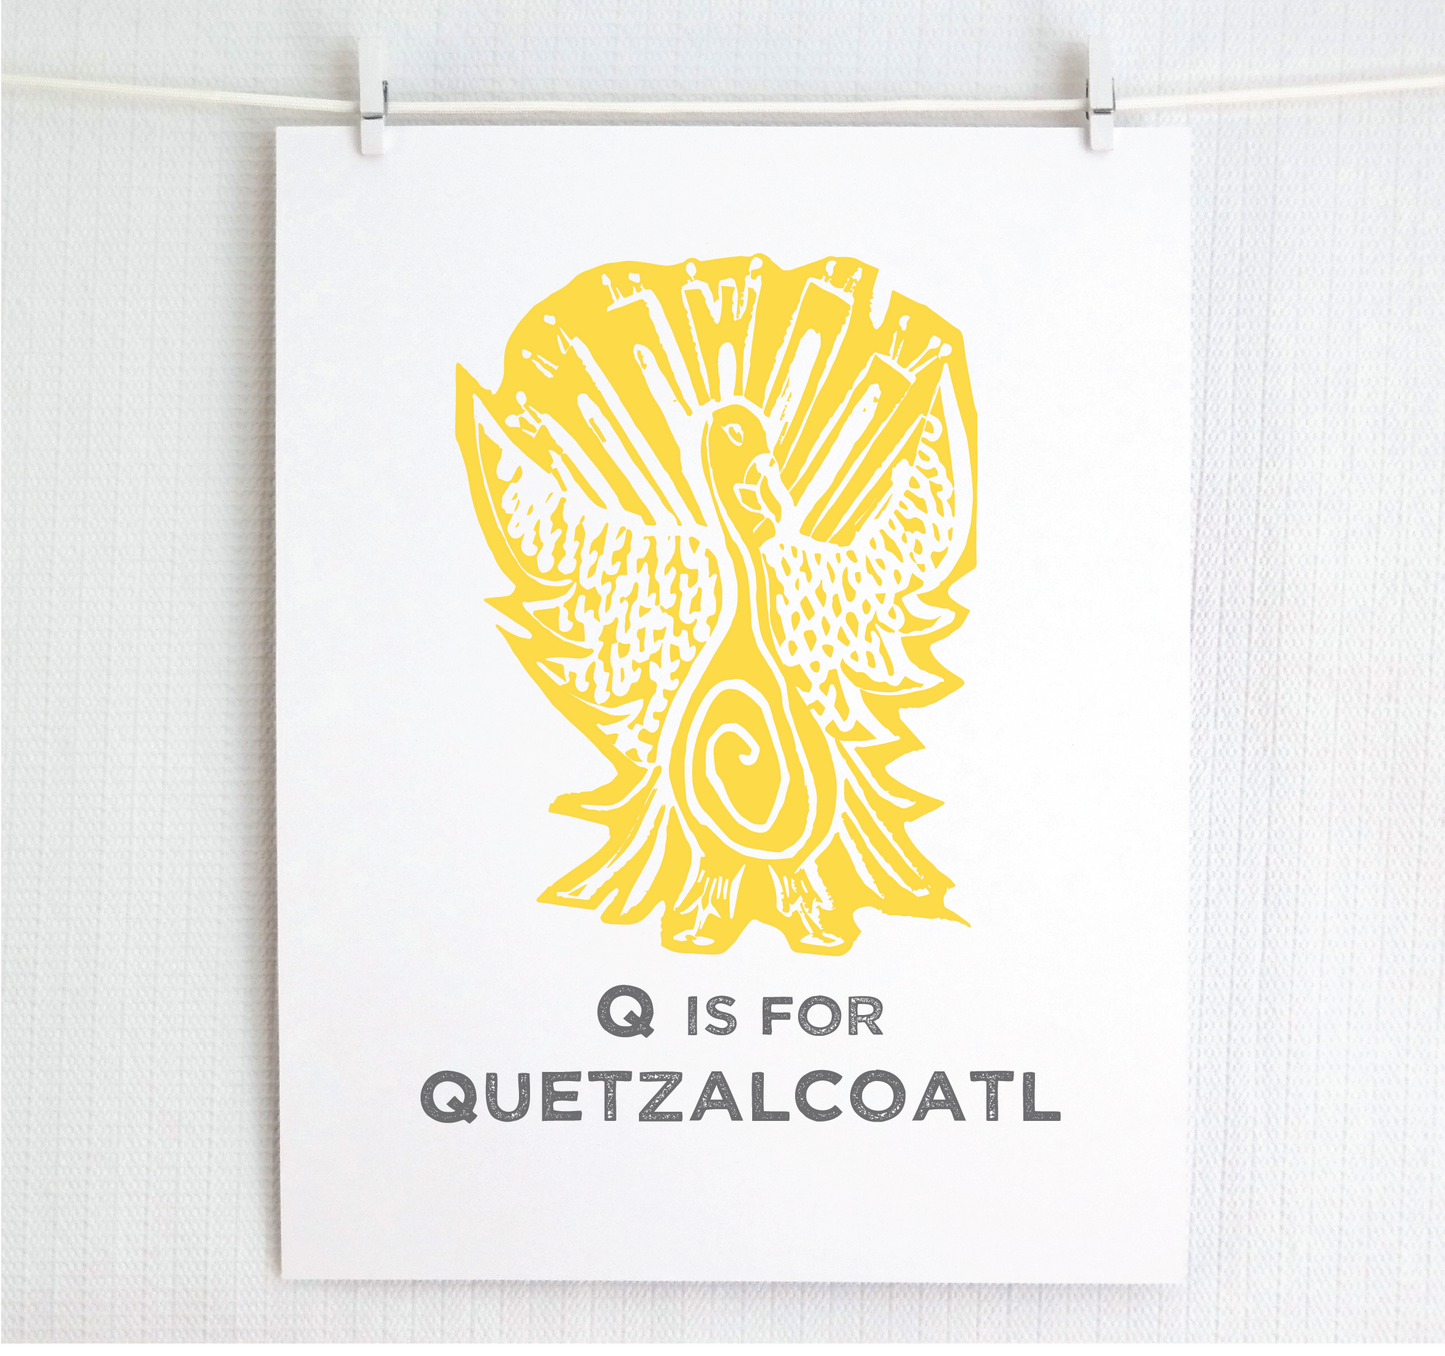 Q is for Quetzalcoatl